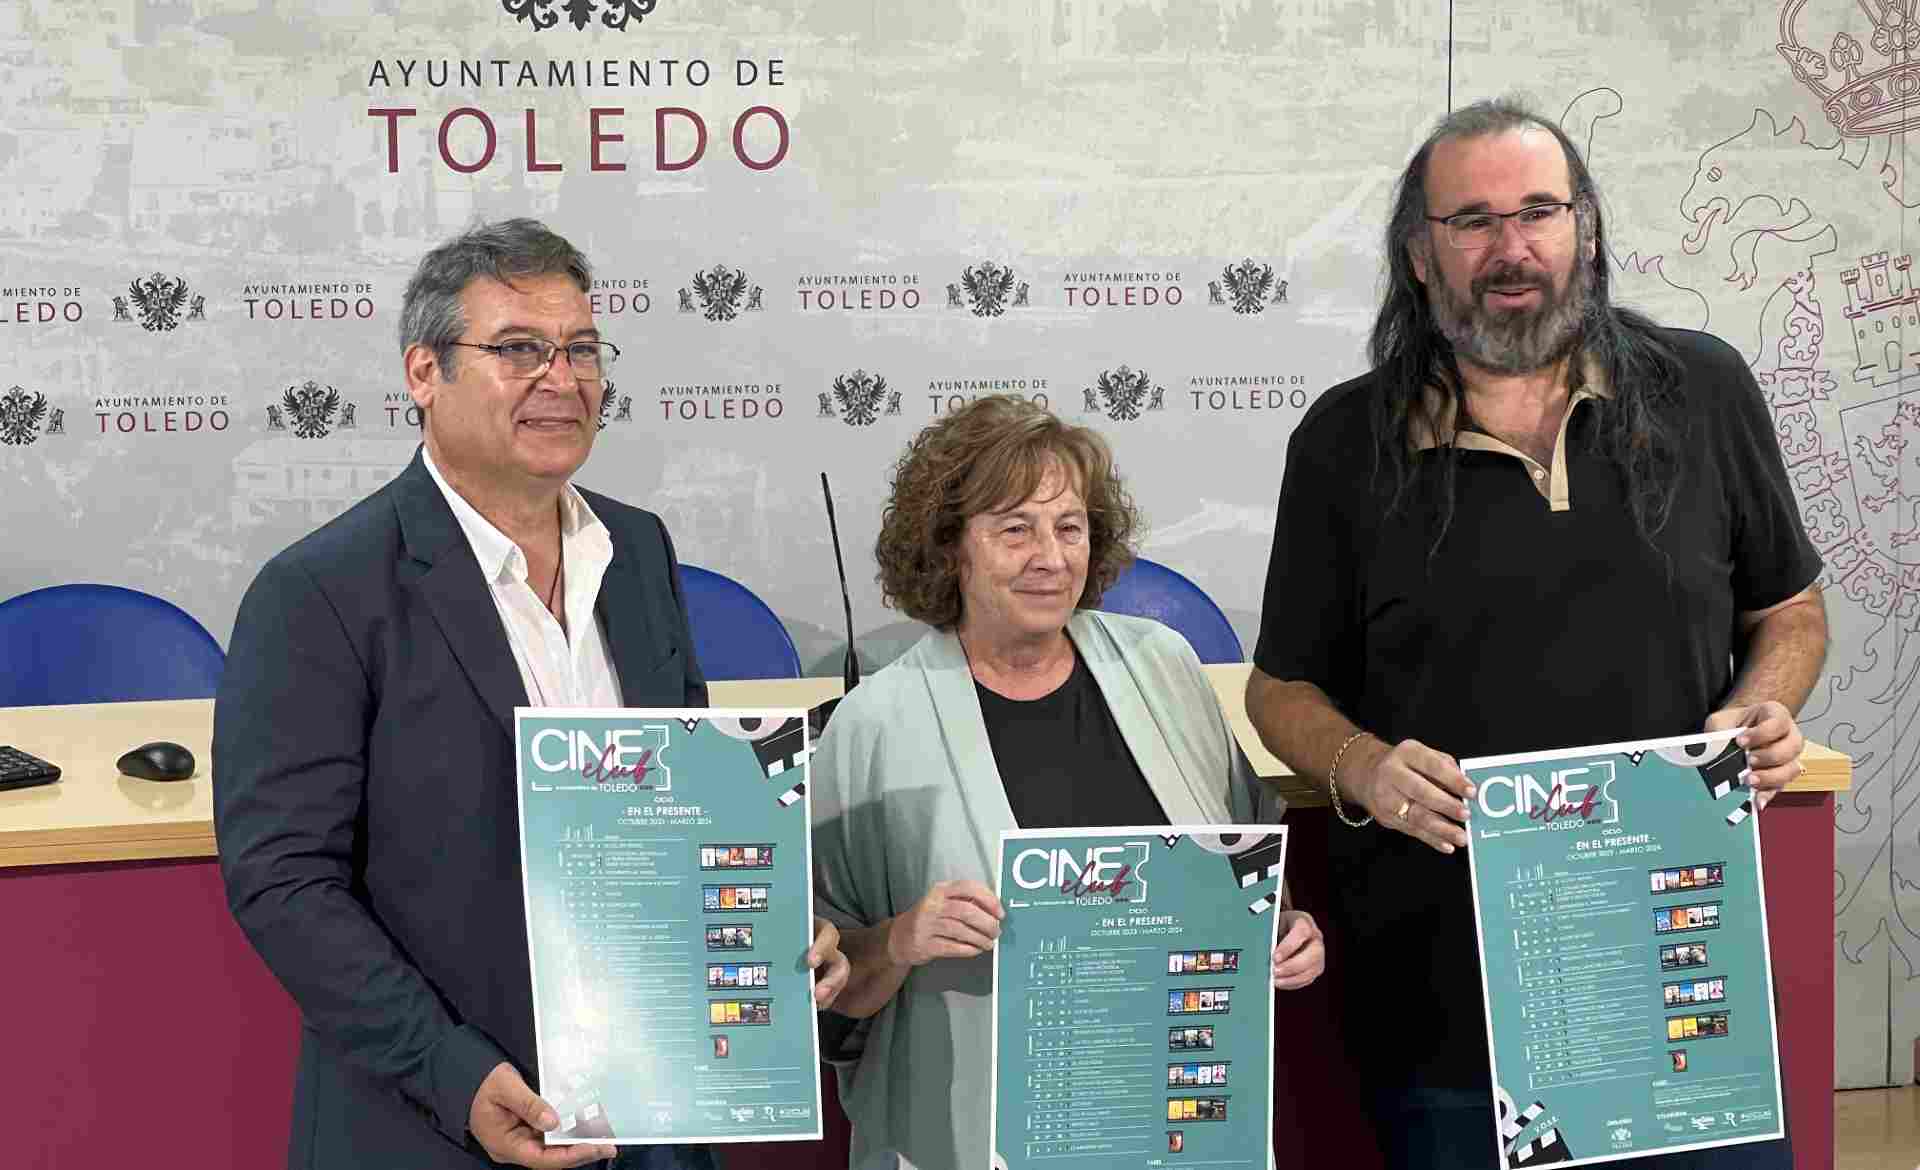 Presentación de la temporada del Cineclub Toledo.